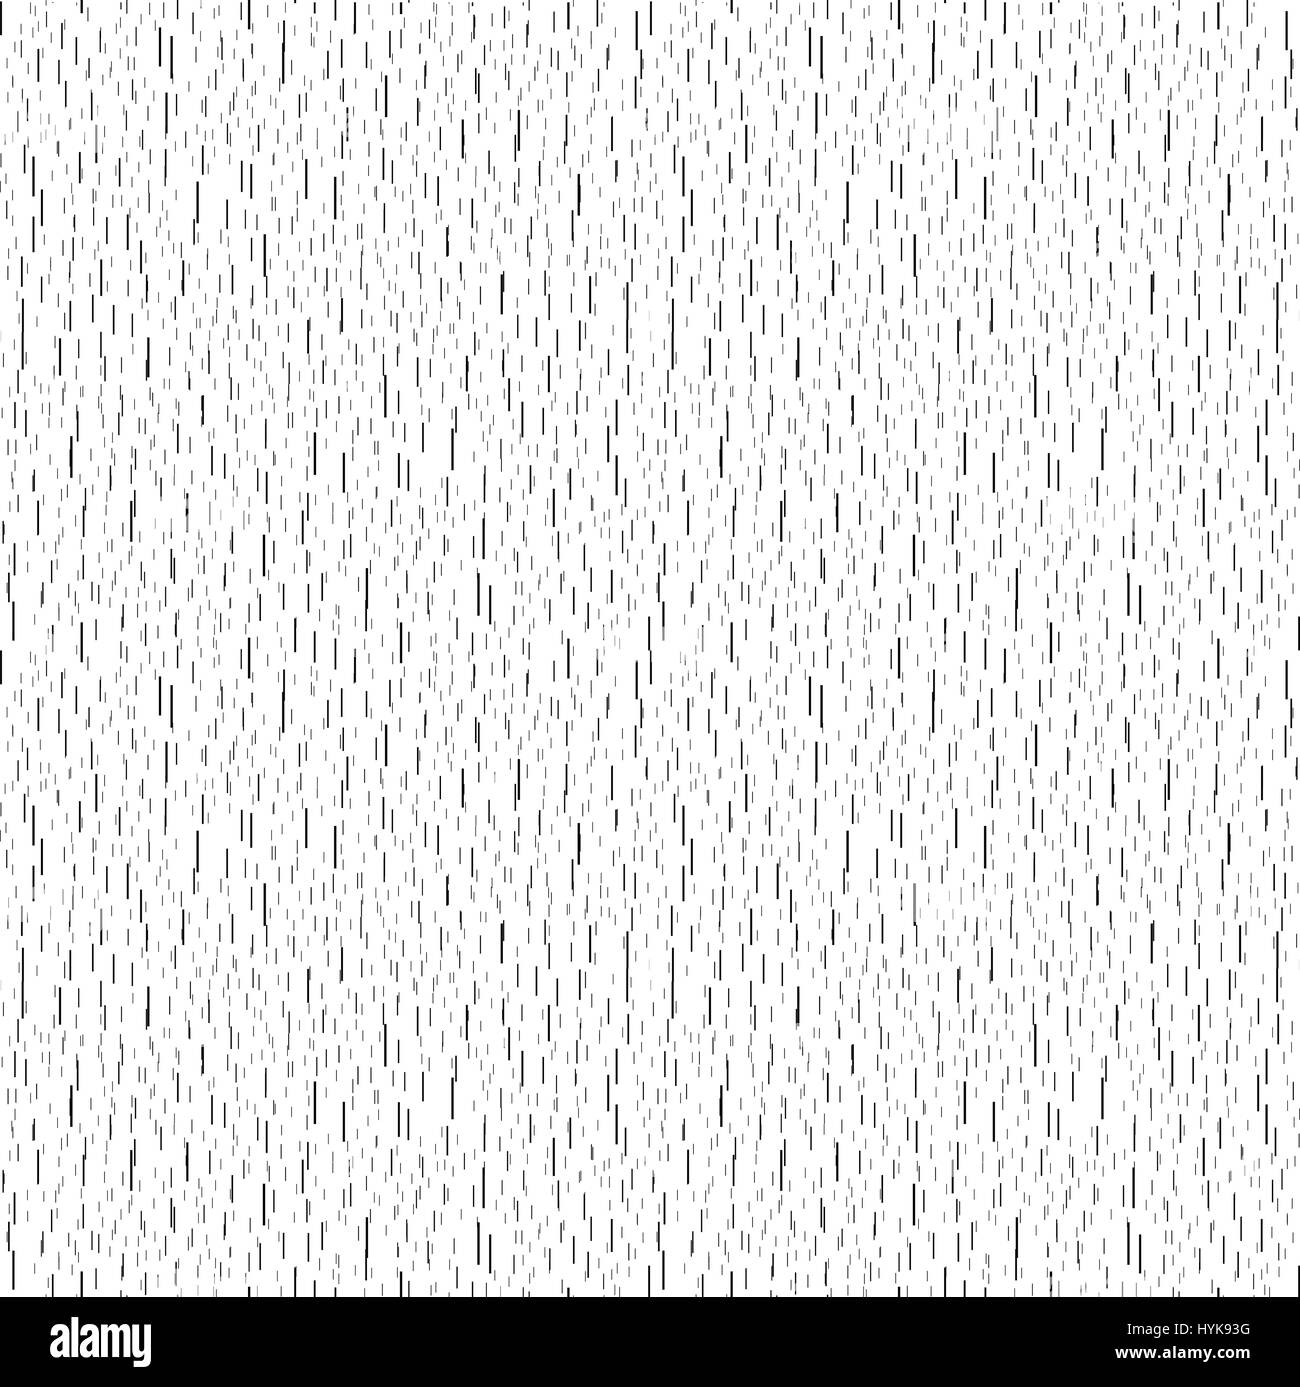 Abstrait toile de pluie isolées stylisé, chute de l'eau gouttes la texture, les traits verticaux noirs sur fond blanc vector illustration Illustration de Vecteur